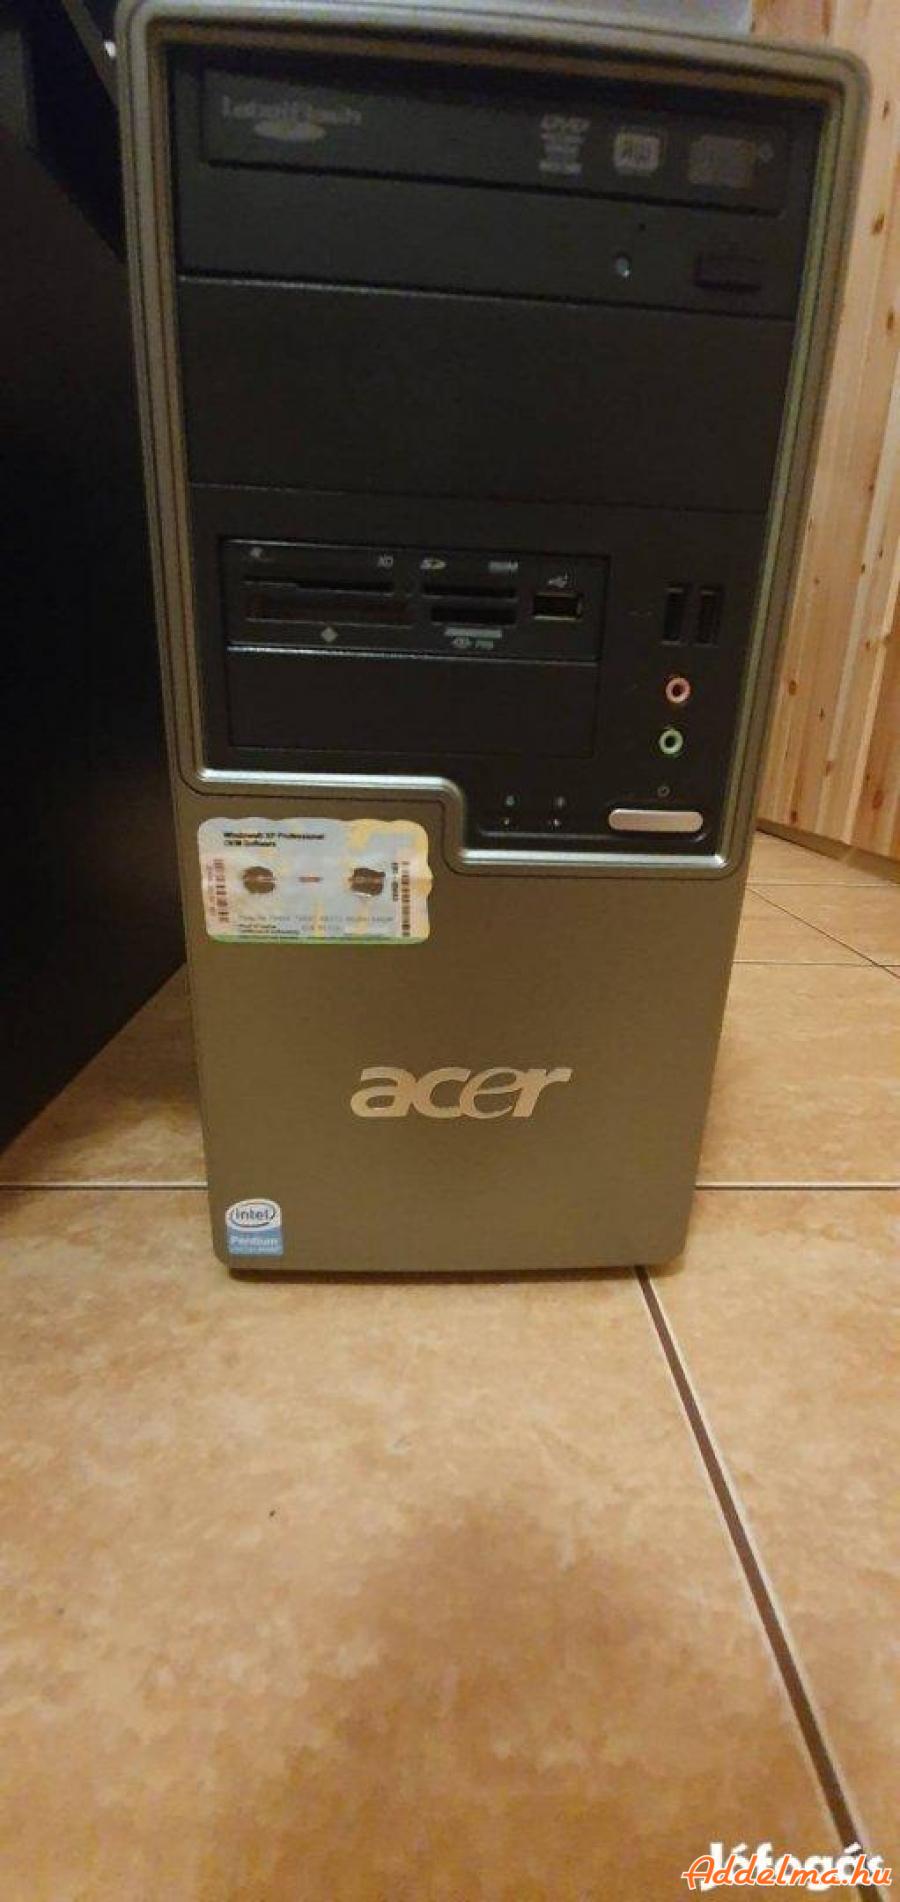 Acer-Pc nagy tárhelyel